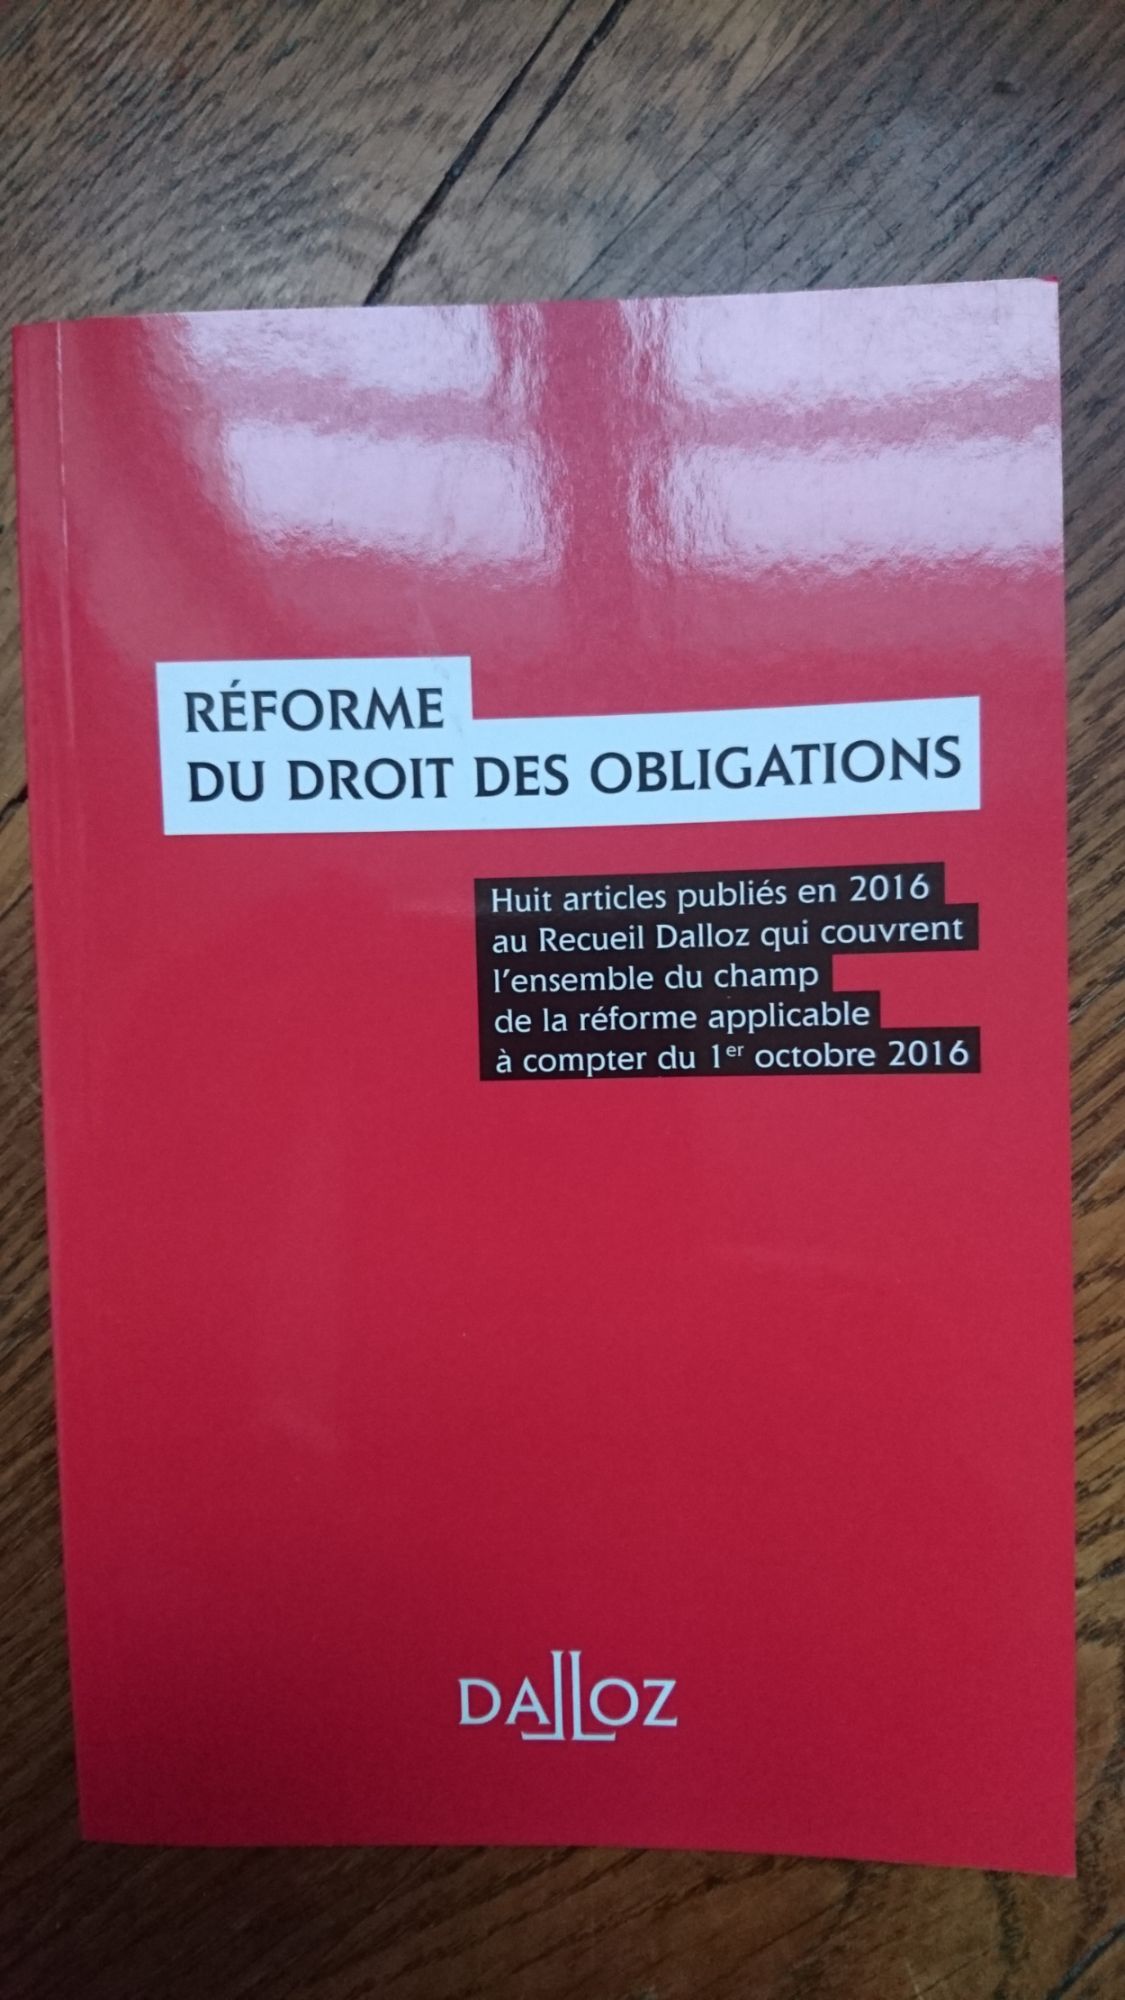 RÉFORME DU DROIT DES OBLIGATIONS (huit articles publiés en 2016 au Recueil Dalloz qui couvrent l'ensemble du champ de la réforme applicable à compter du 1er octobre 2016)